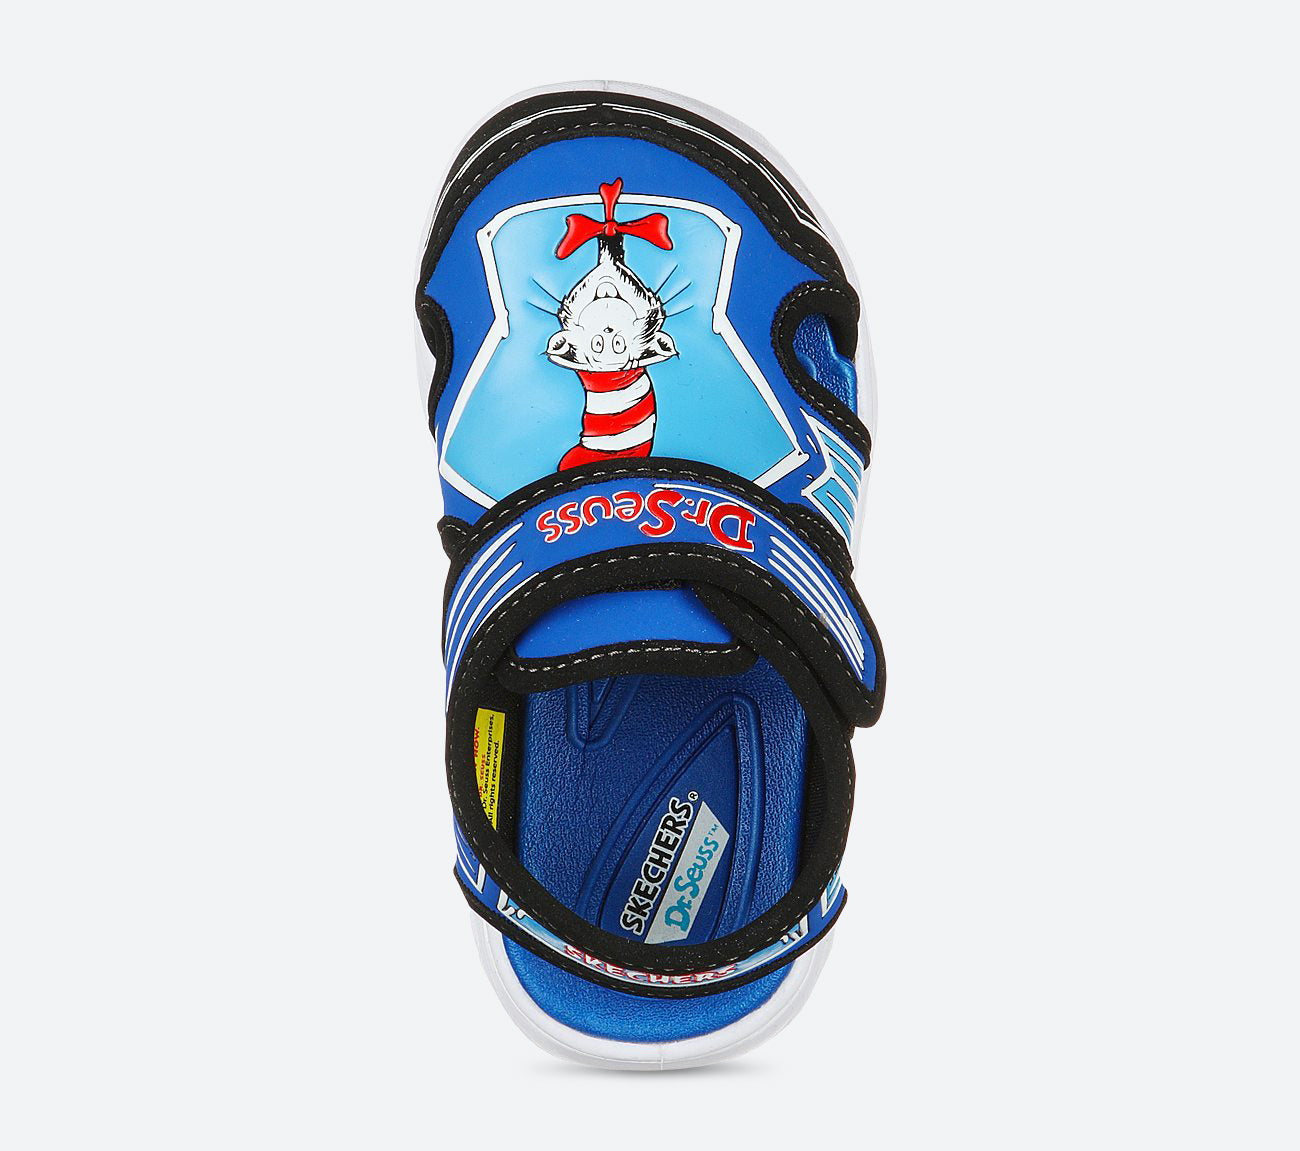 Hypno-Splash Sandal Skechers